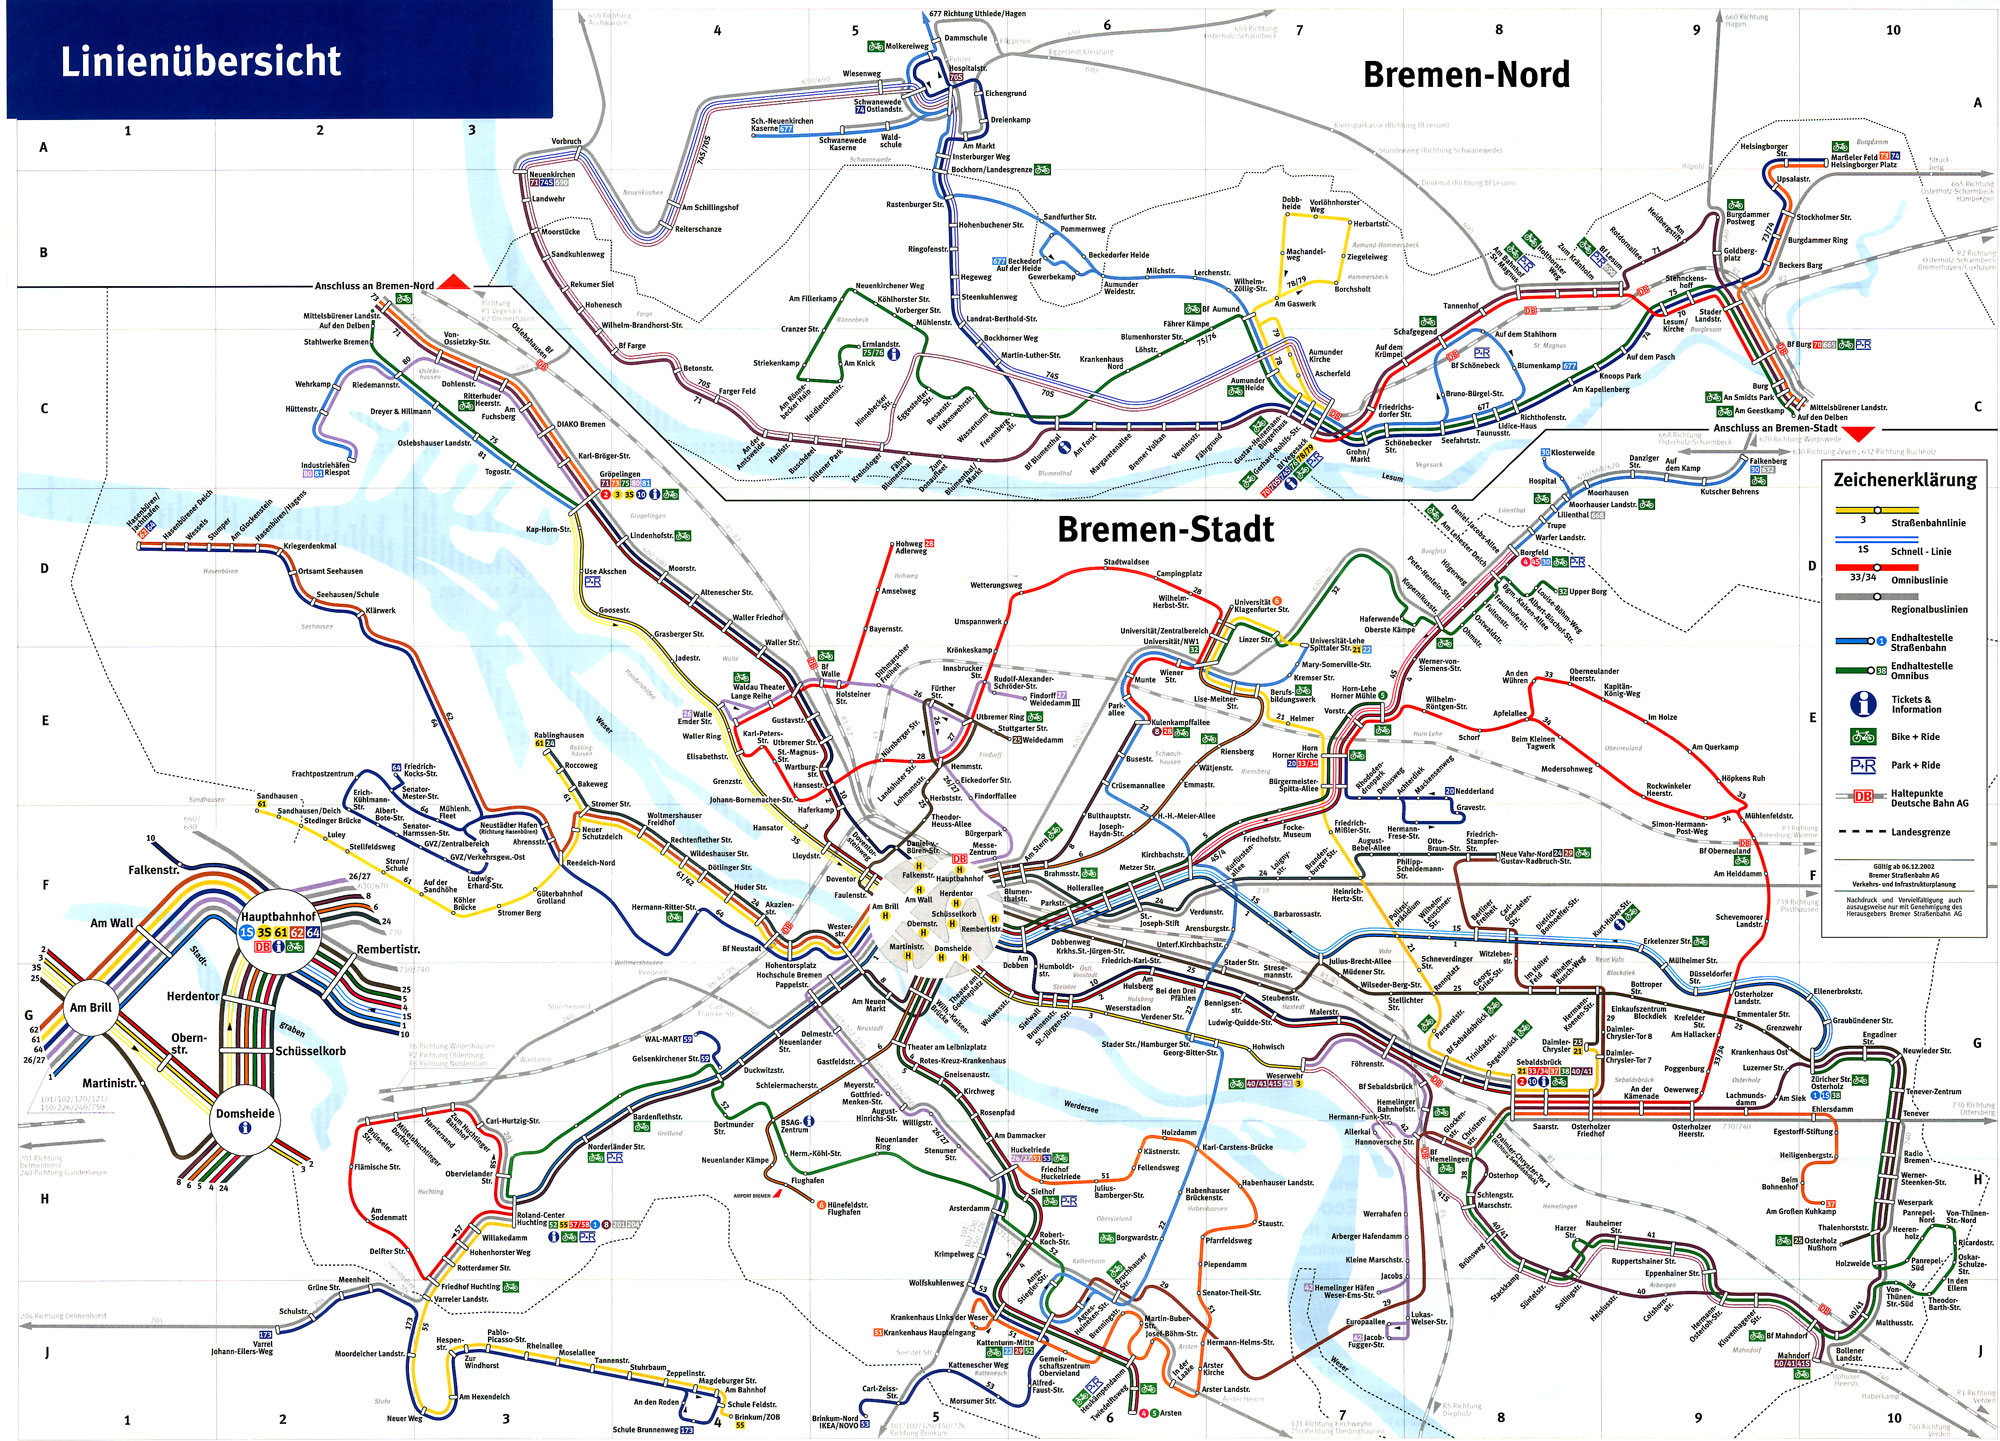 2002 sah das Liniennetz wieder etwas anders aus. Die Linie 4 hat Borgfeld erreicht.